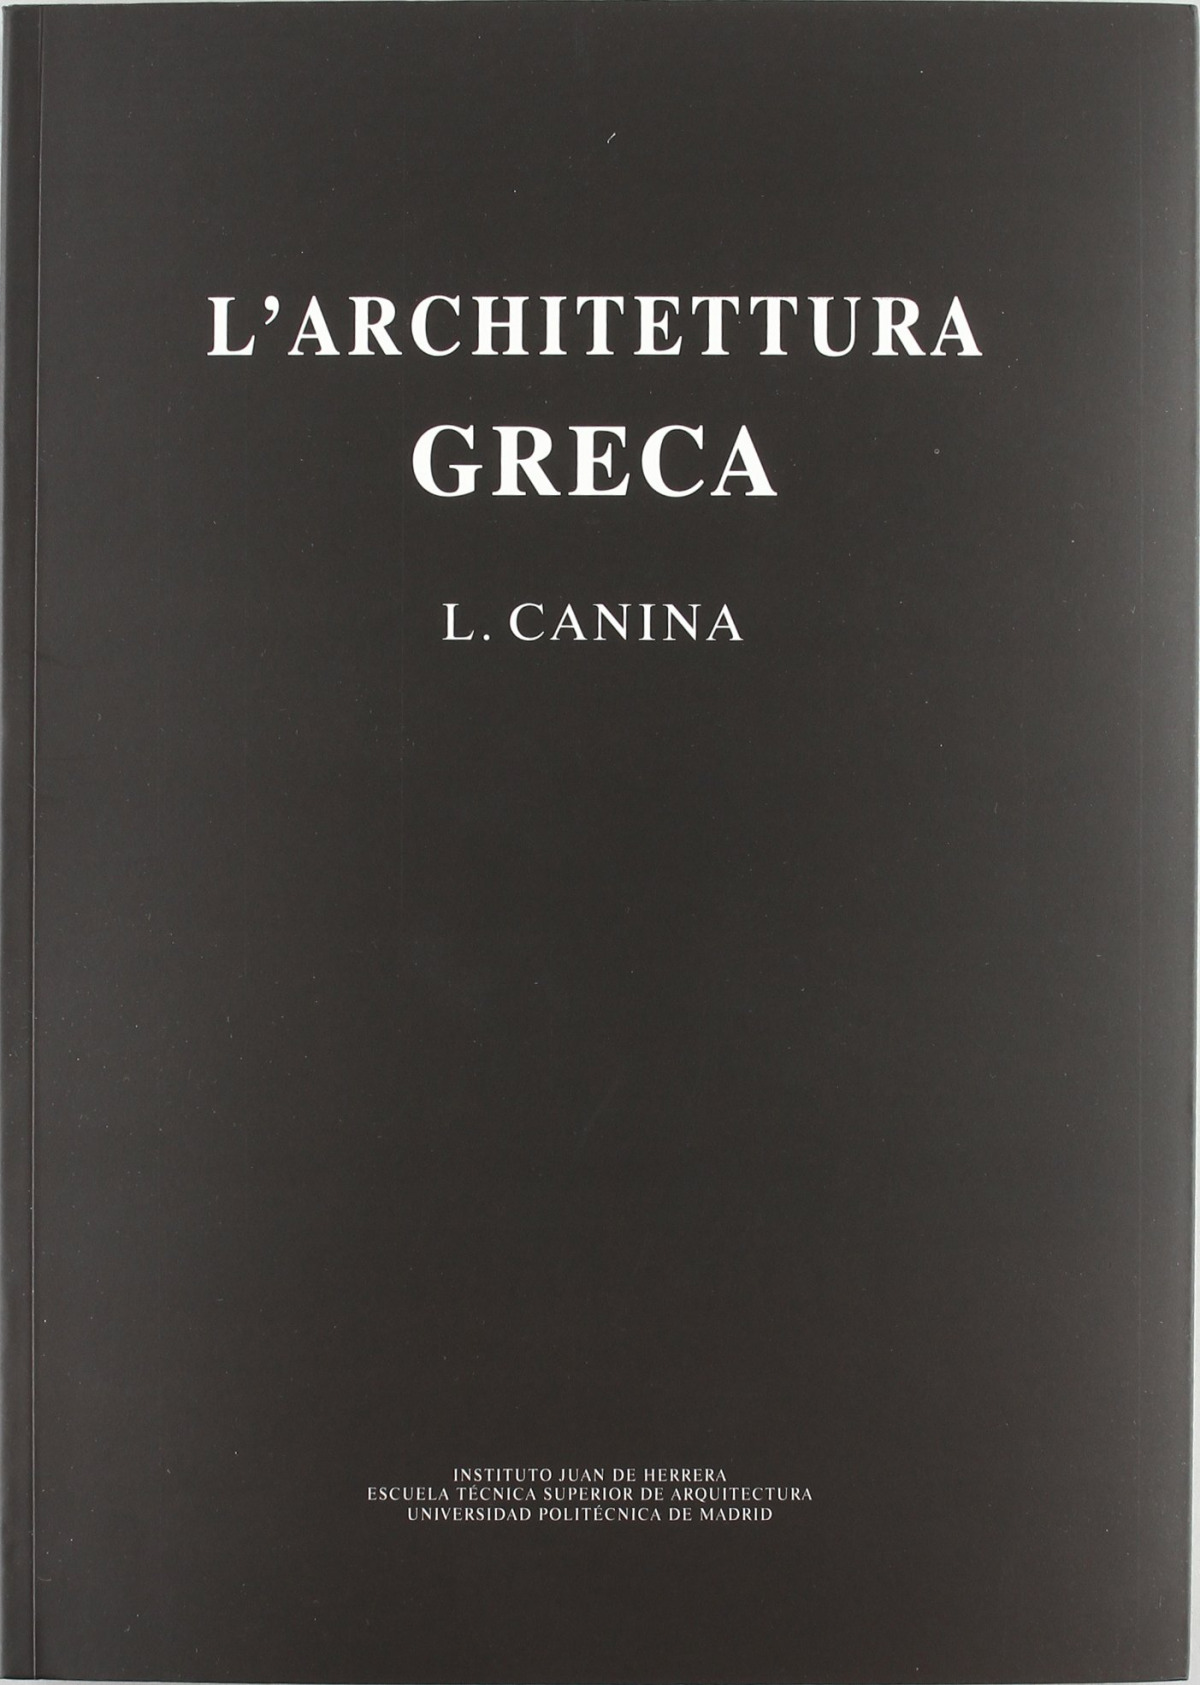 L'archittettura greca, descritta e dimostrata coi monumenti. (Fács. de - Canina